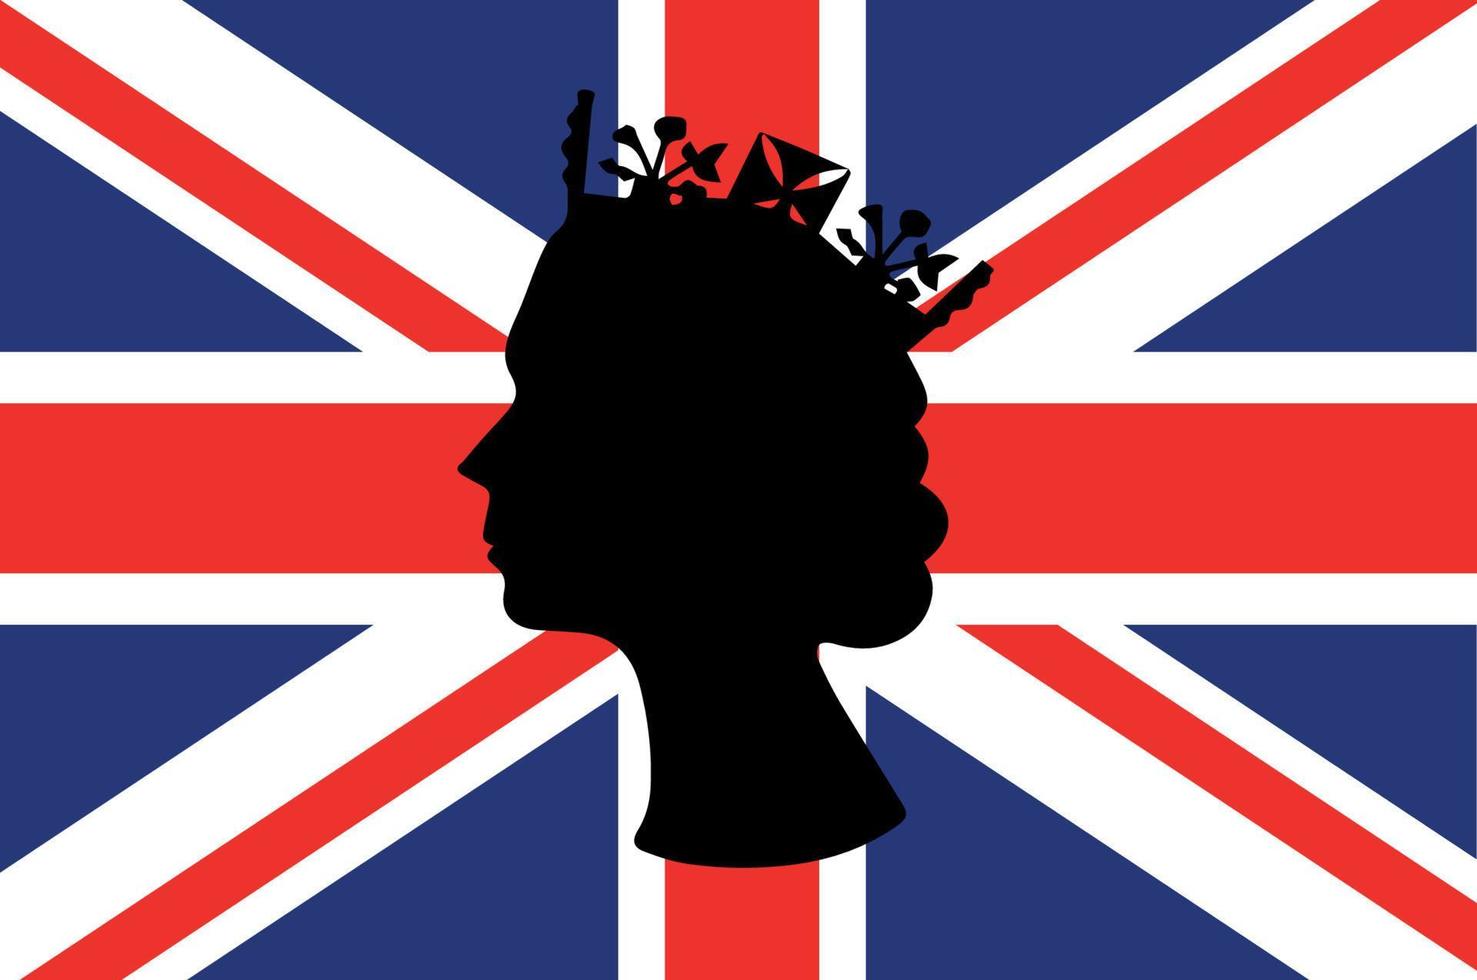 cara de reina isabel negra con bandera británica del reino unido emblema nacional de europa icono ilustración vectorial elemento de diseño abstracto vector